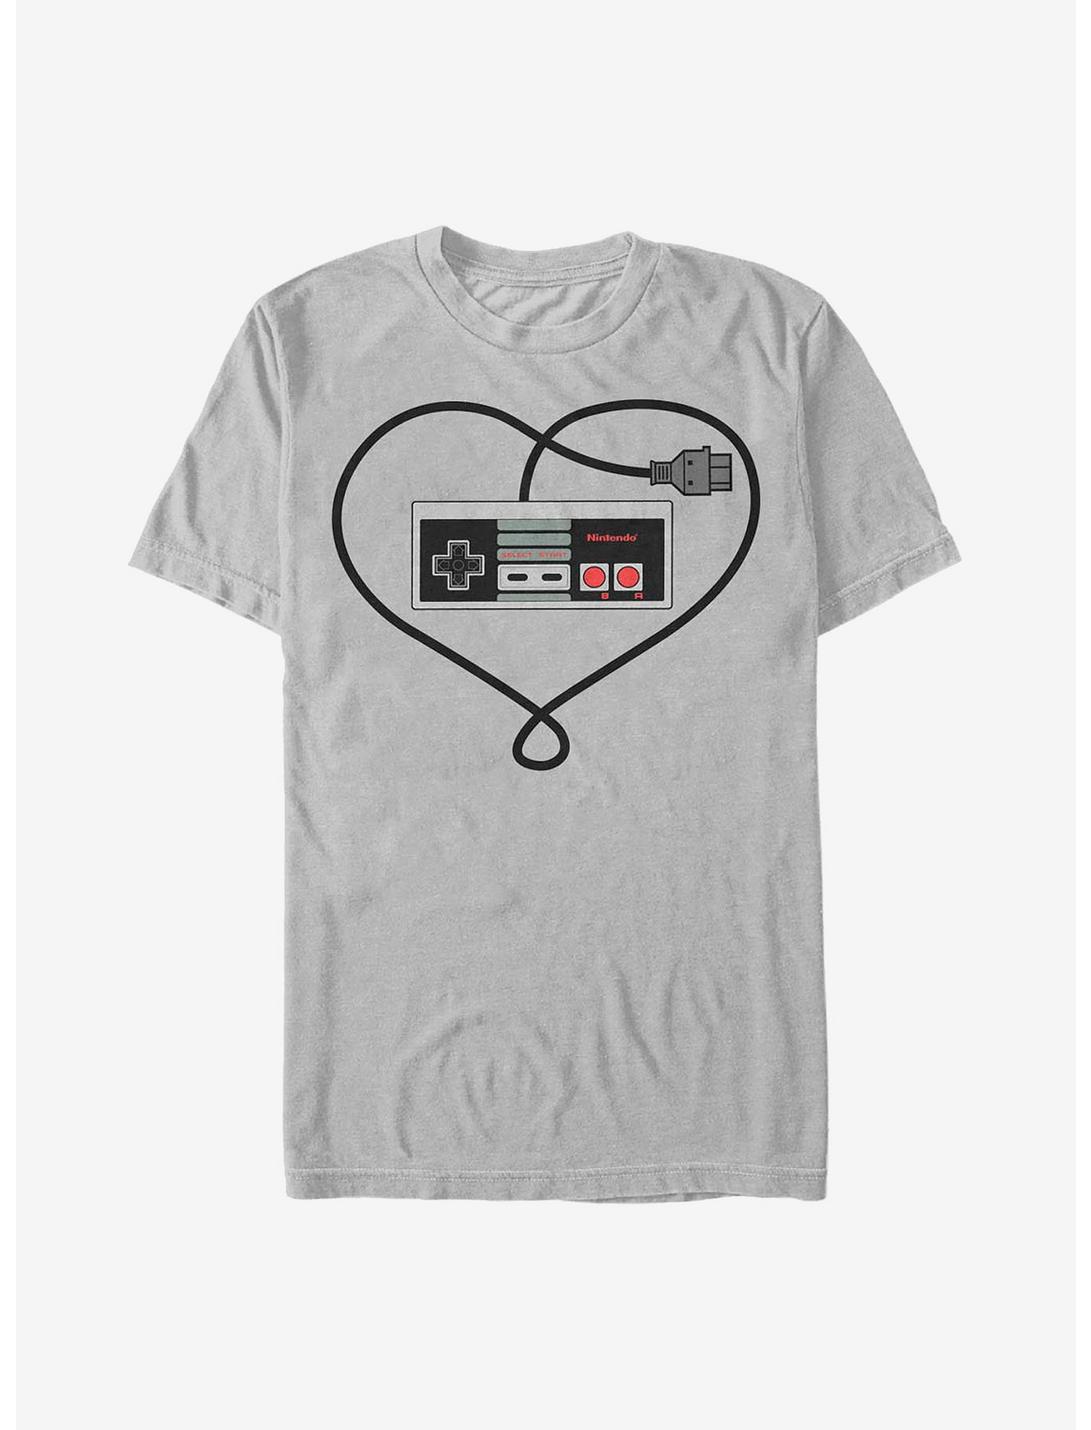 Nintendo True Love T-Shirt, SILVER, hi-res